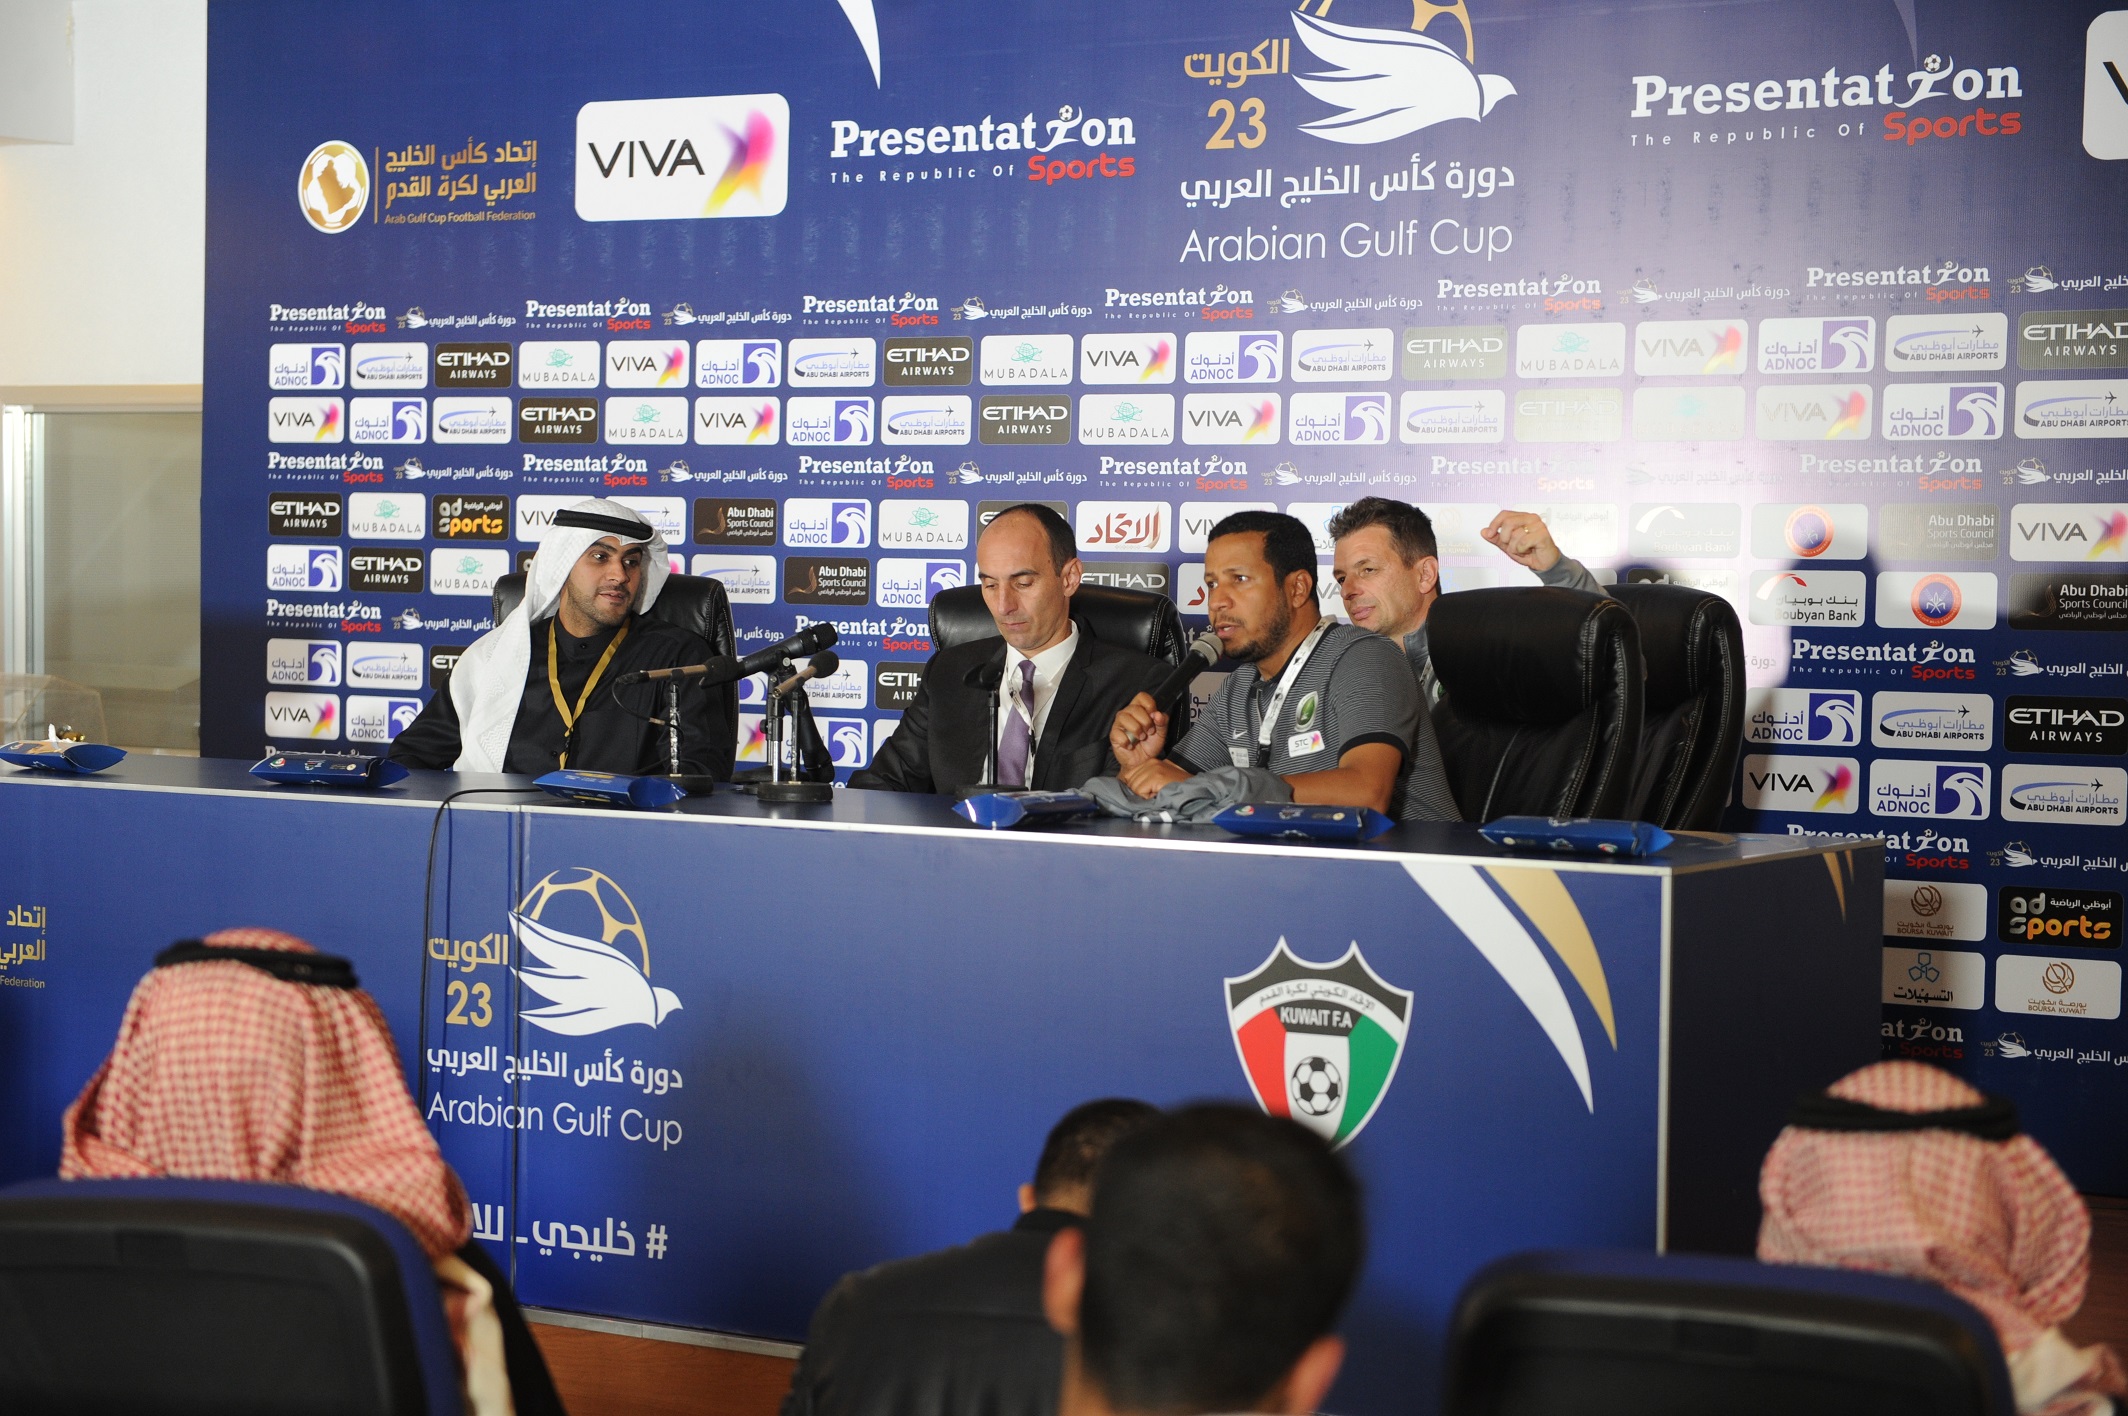 مدرب المنتخب السعودي كرونوسلاف يورشيتش خلال المؤتمر الصحفي عقب المباراة التي جمعت منتخبي السعودية والكويت في افتتاح (خليجي23)